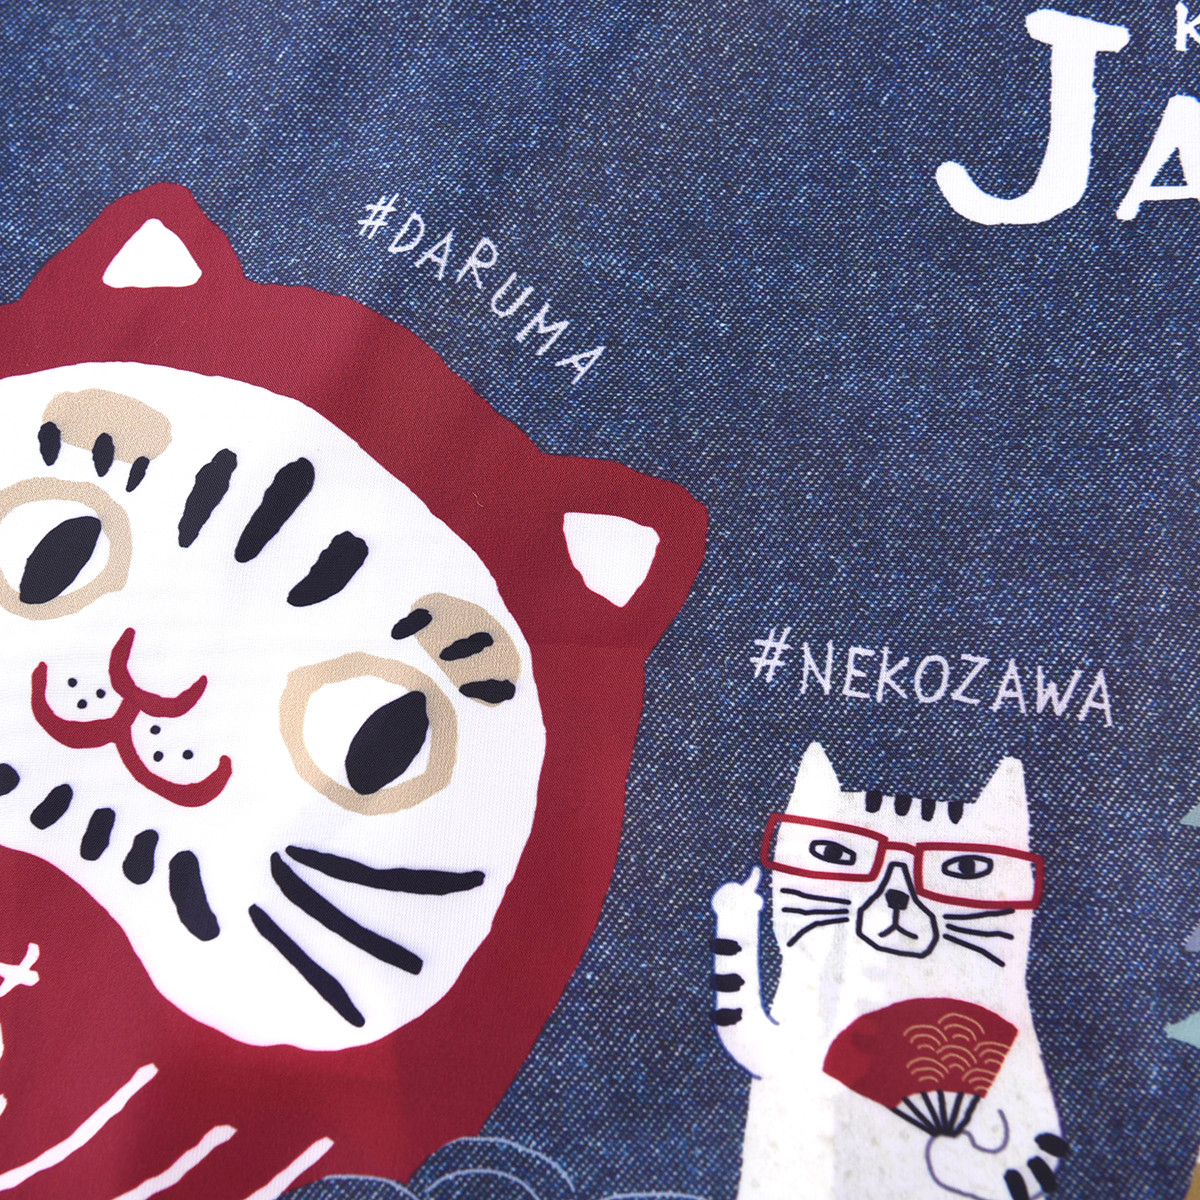 23-6698 猫だるまとネコザワ - 株式会社クスグルジャパン|愛知県名古屋 